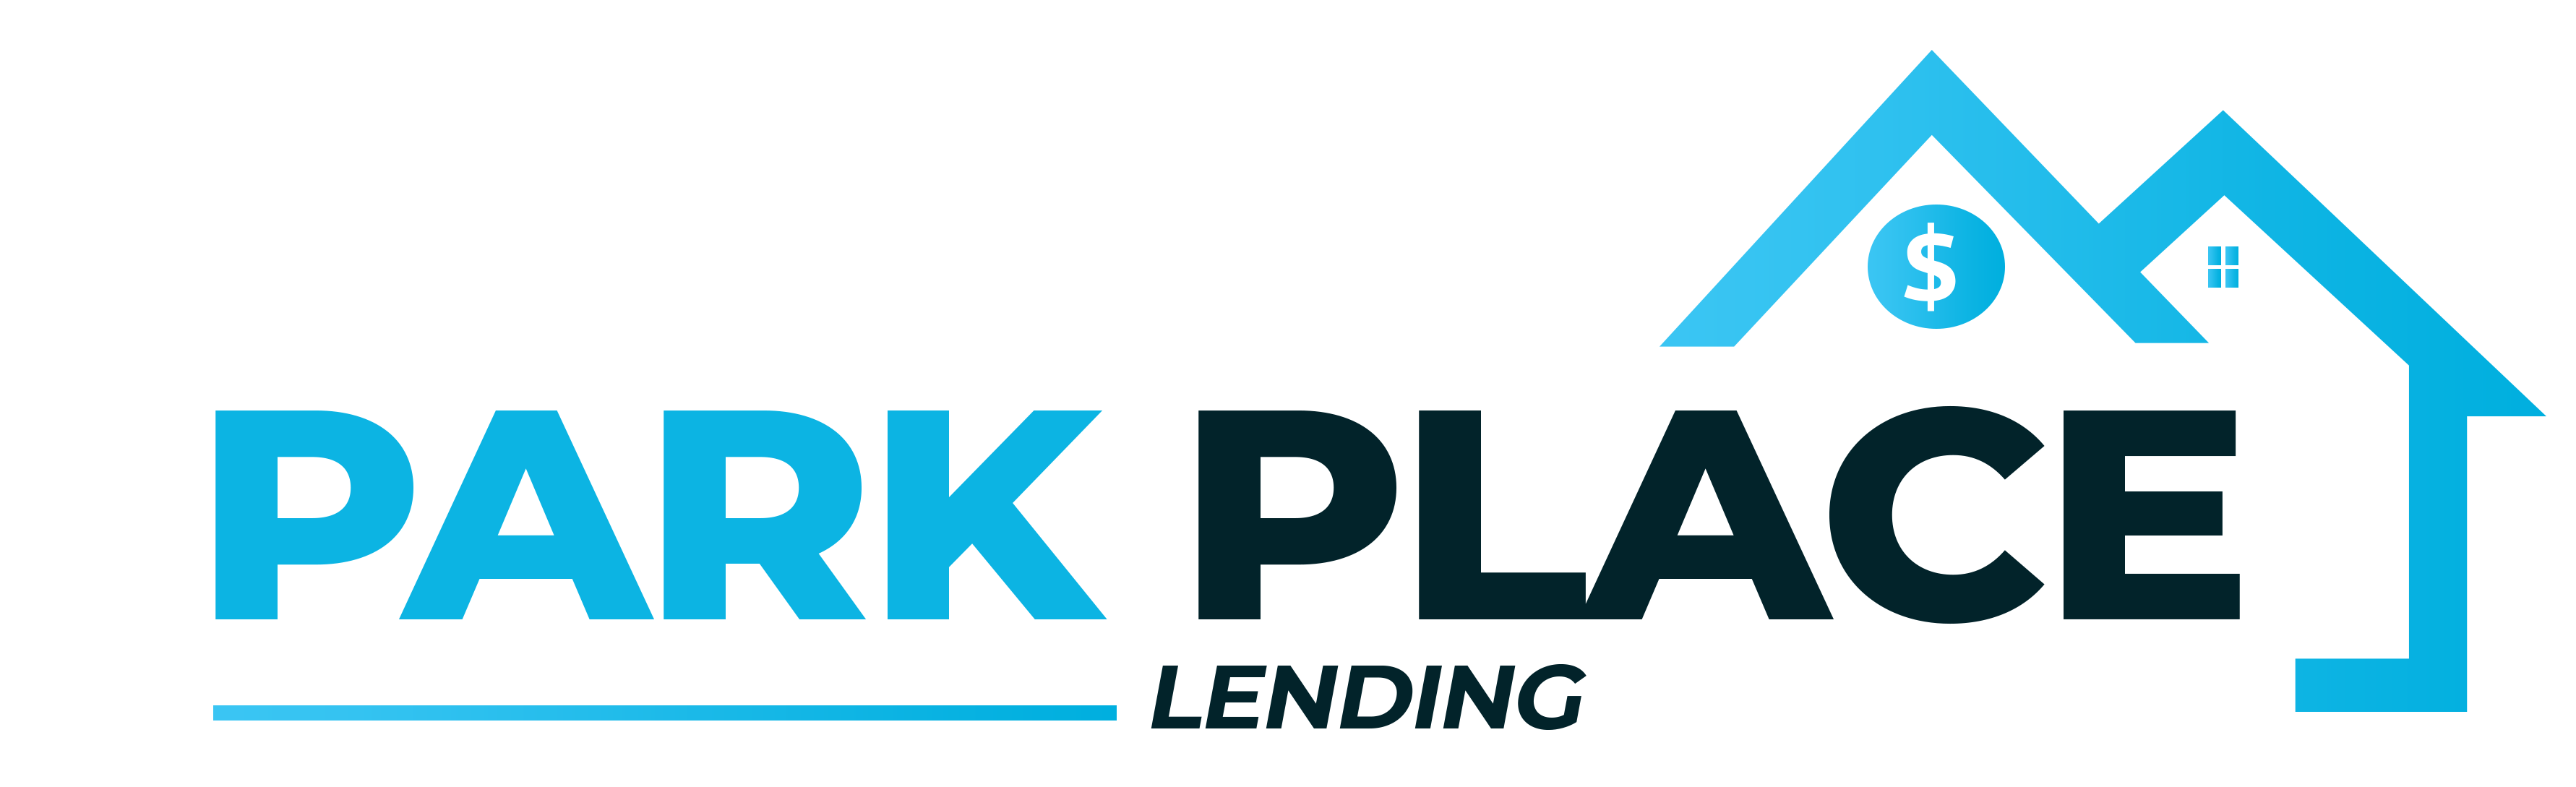 Park Place Lending